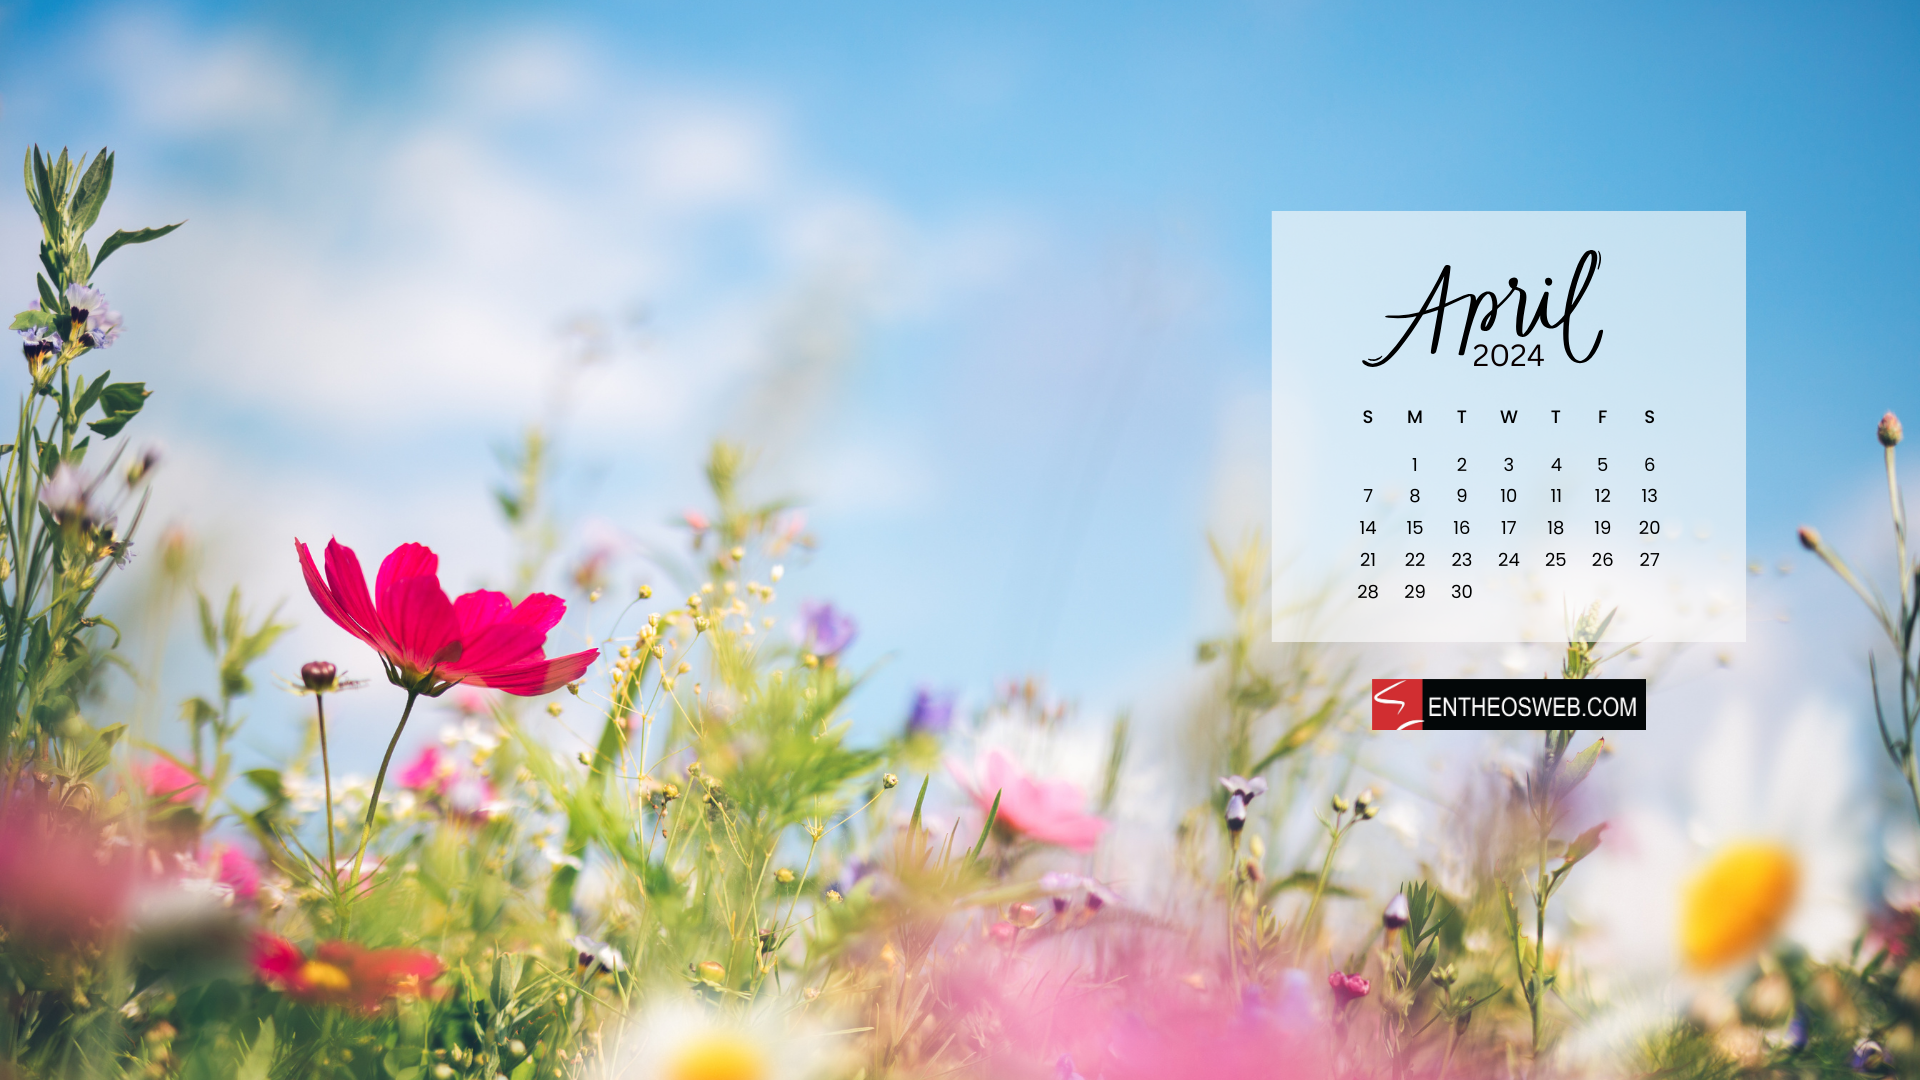 April 2024 Calendar Desktop Wallpaper | Entheosweb with April Calendar Desktop Wallpaper 2024